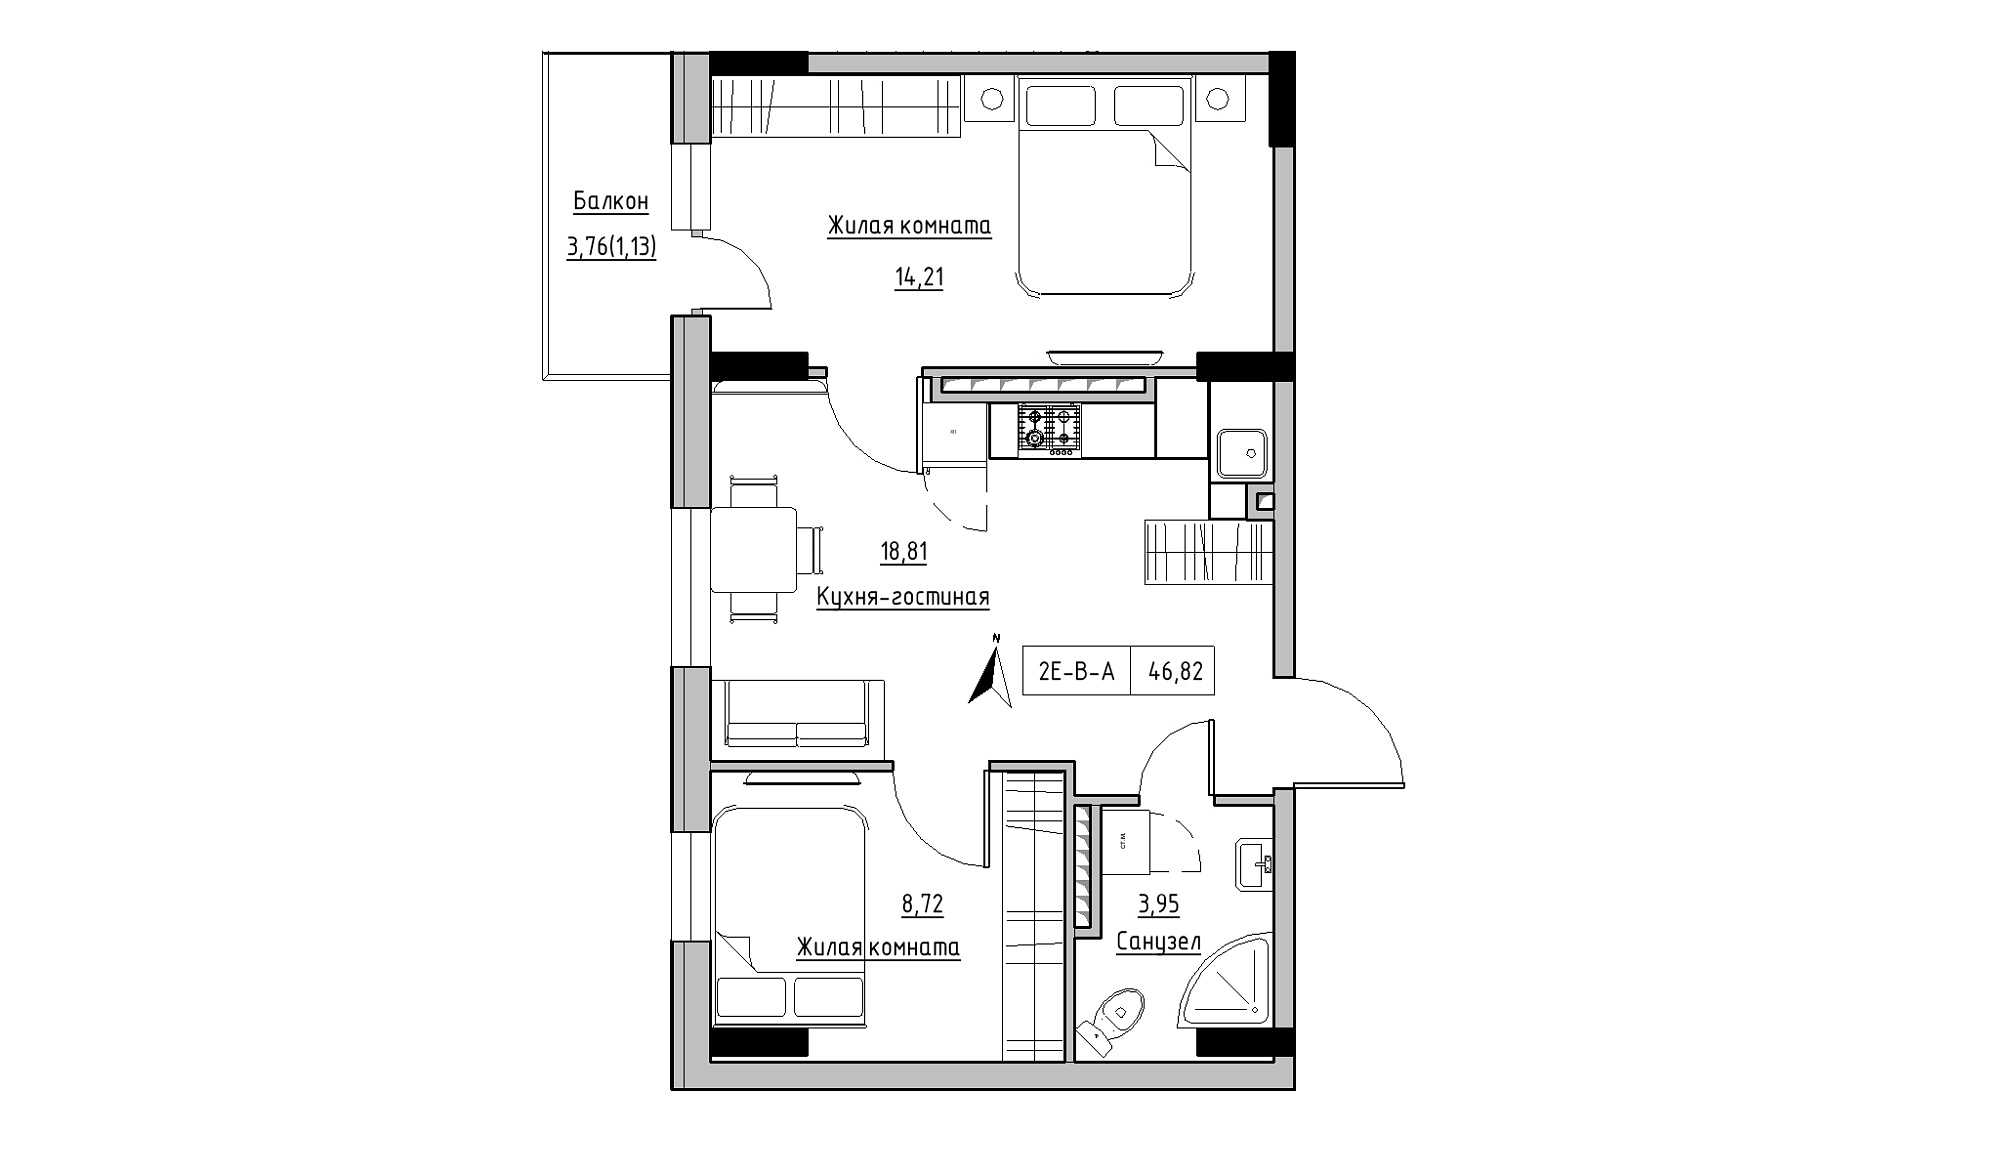 Планування 2-к квартира площею 46.82м2, KS-025-06/0003.